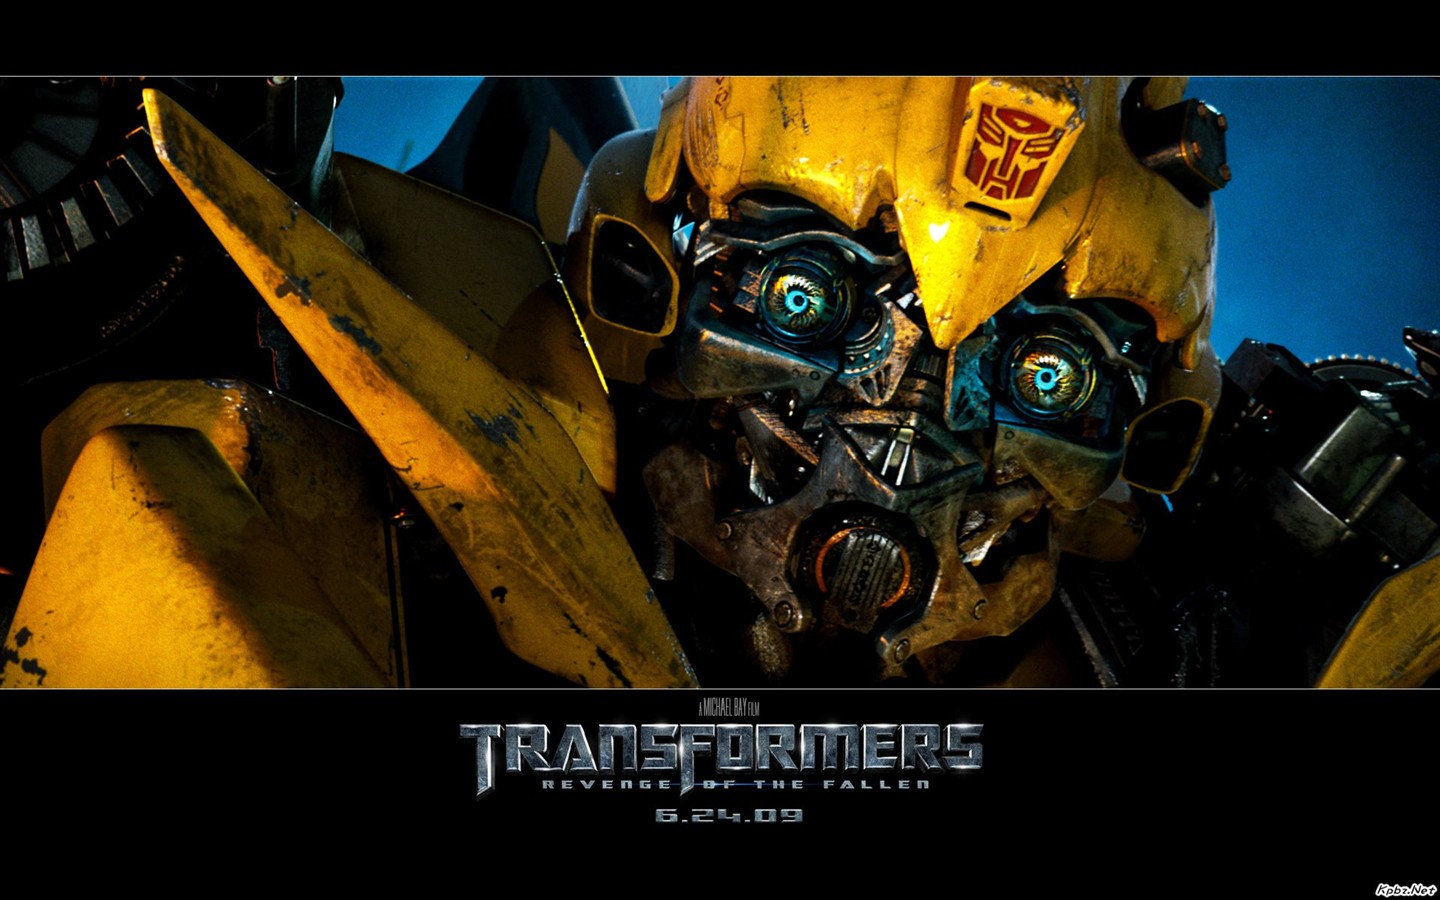 Transformers HD papel tapiz #7 - 1440x900